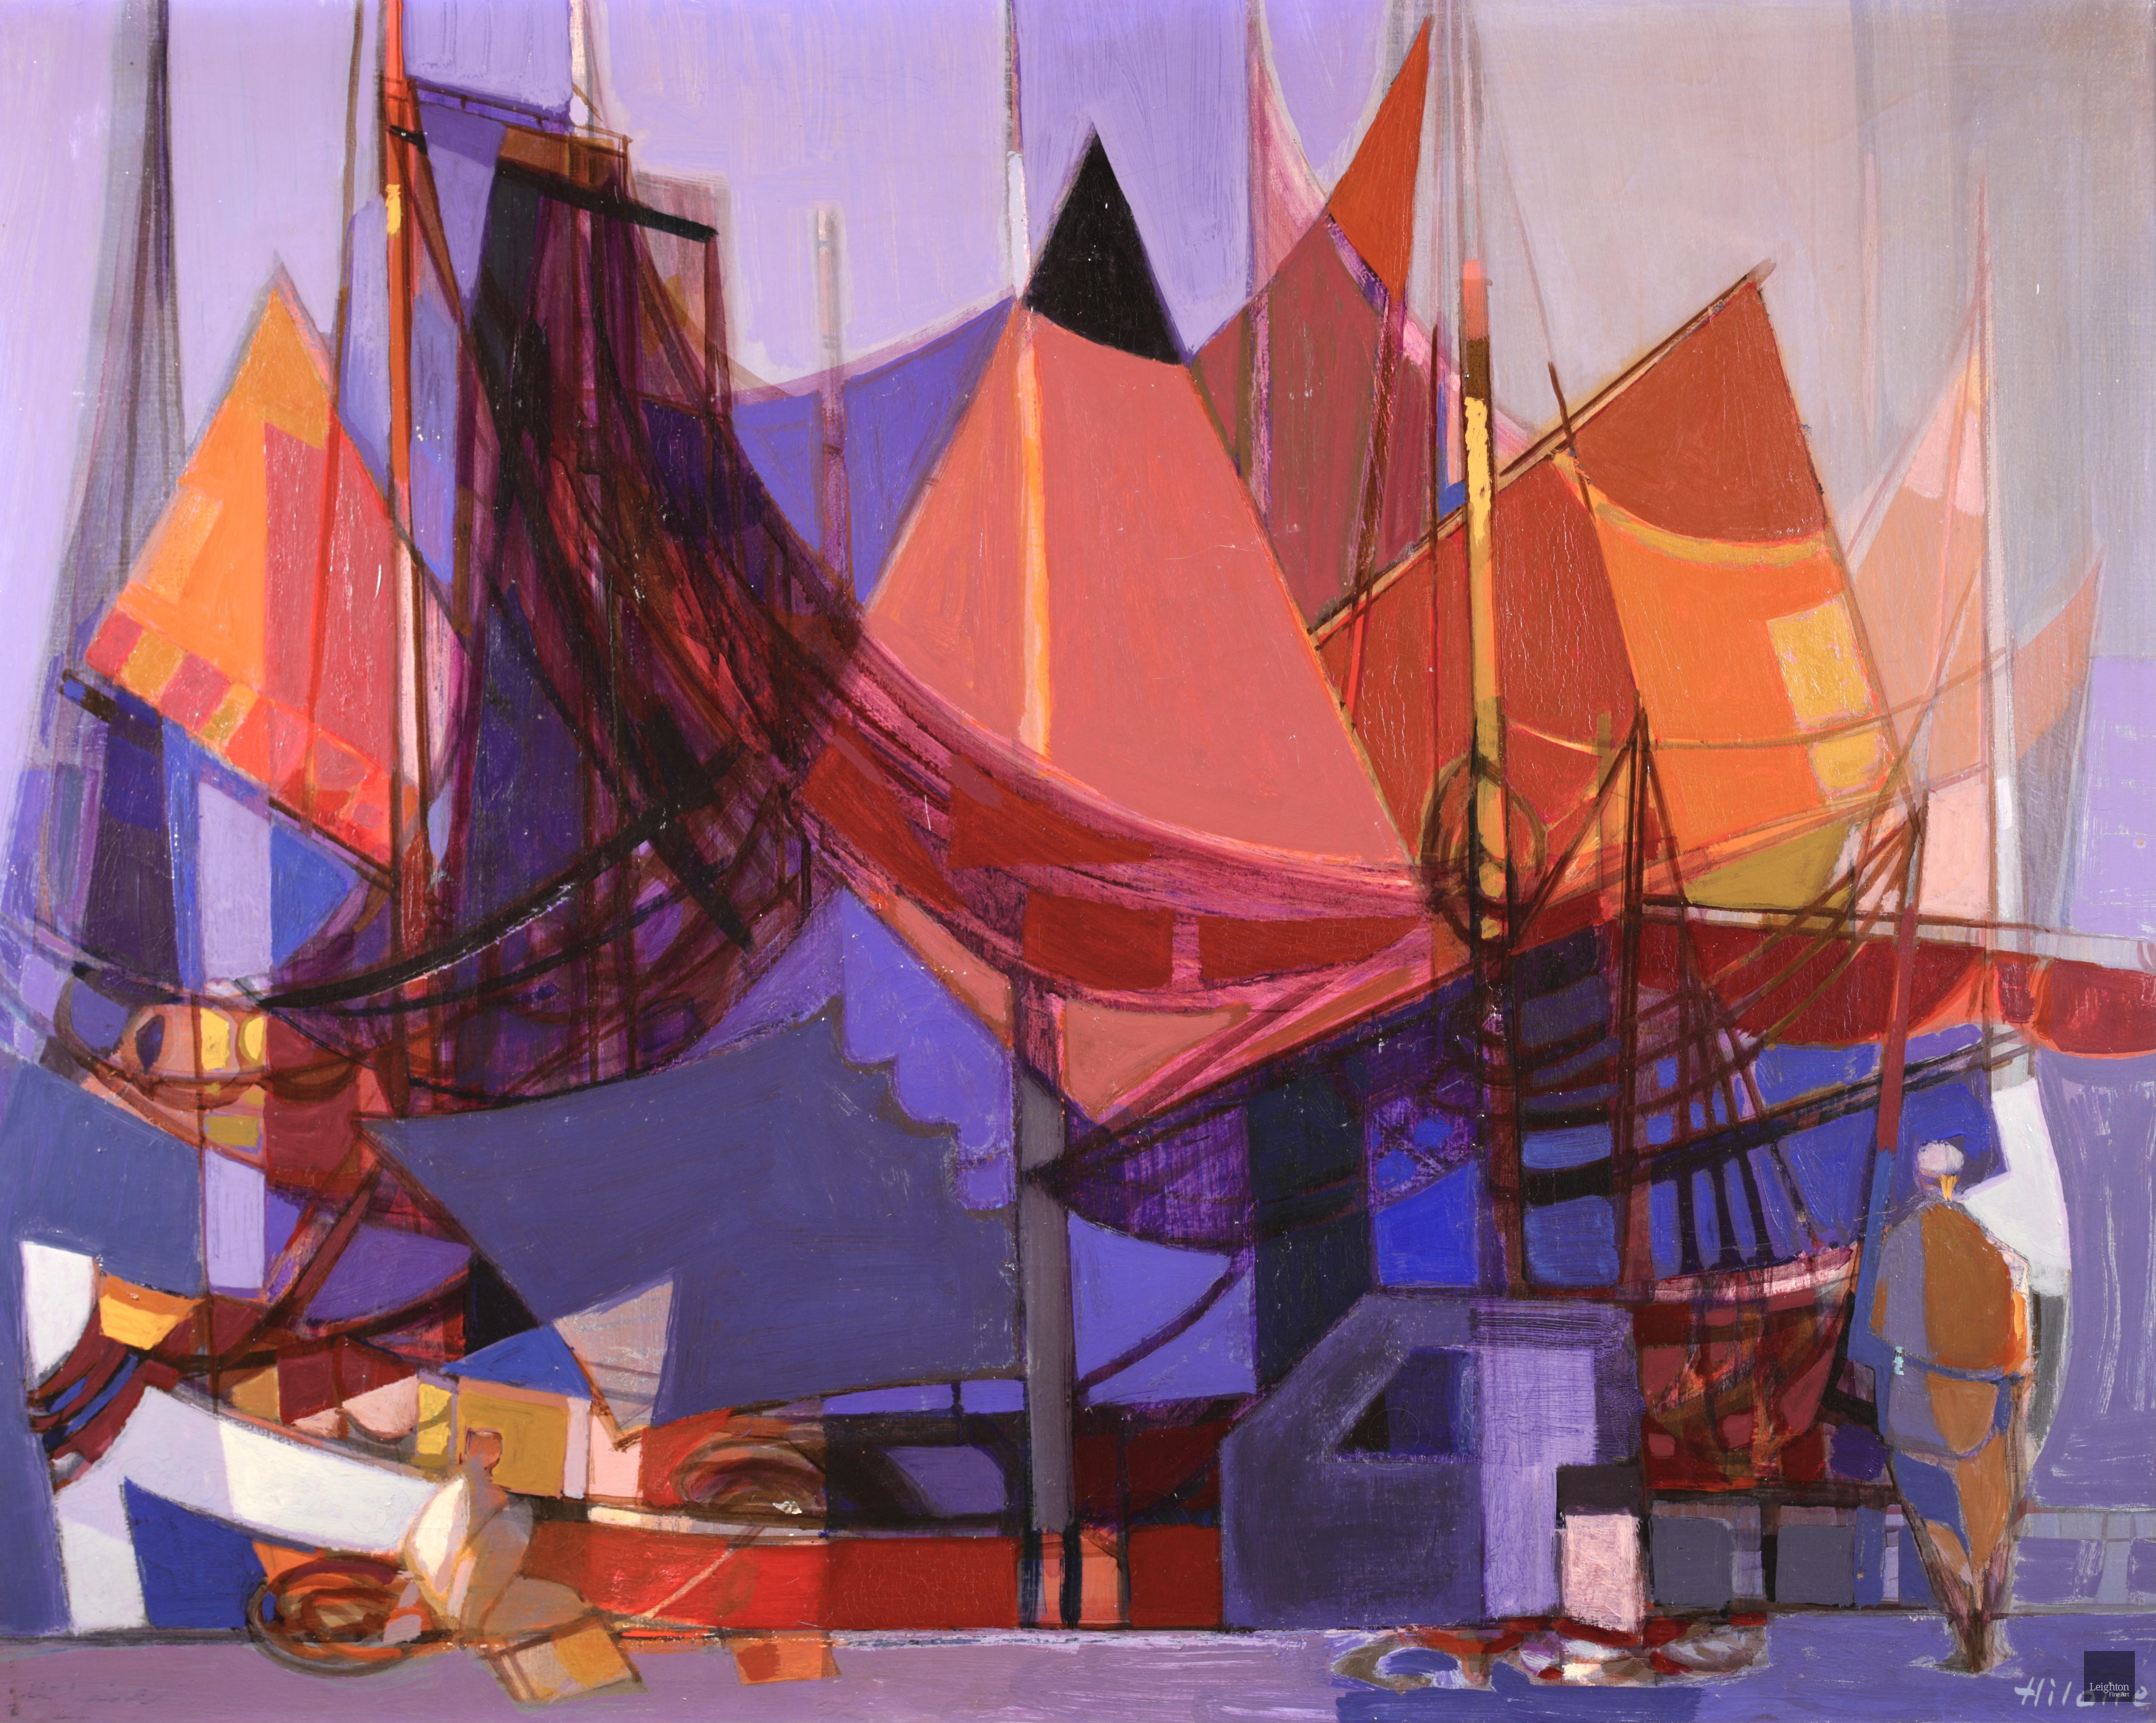 Signiert und betitelt Öl auf Leinwand von Französisch kubistischen Maler Camile Hilaire. Das Werk zeigt einen Mann in einem Hafen neben Booten in Rot-, Blau- und Orangetönen. Ein wunderschön gemaltes Werk im unverwechselbaren Stil des